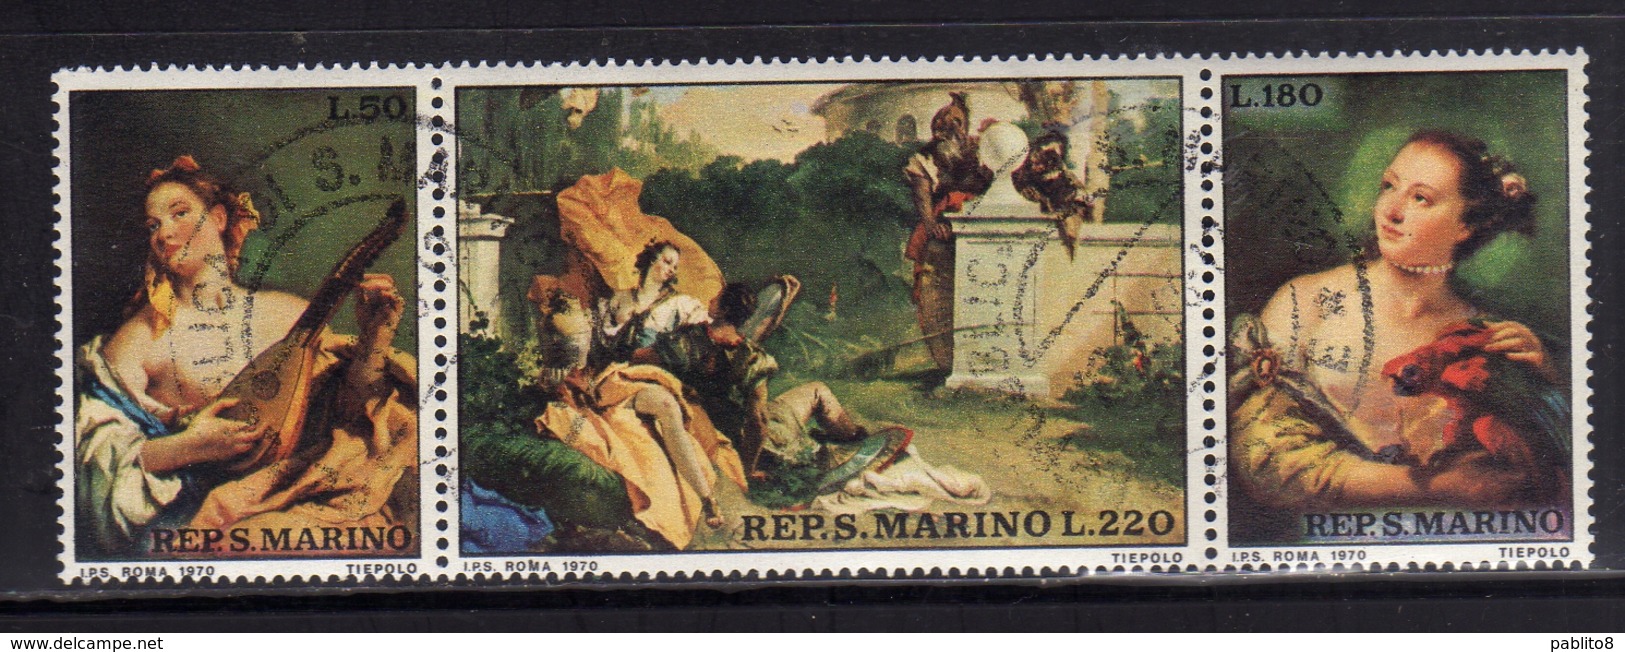 REPUBBLICA DI SAN MARINO 1970 GIAMBATTISTA TIEPOLO PITTORE VENEZIANO SERIE COMPLETA COMPLETE SET USATA USED OBLITERE' - Used Stamps